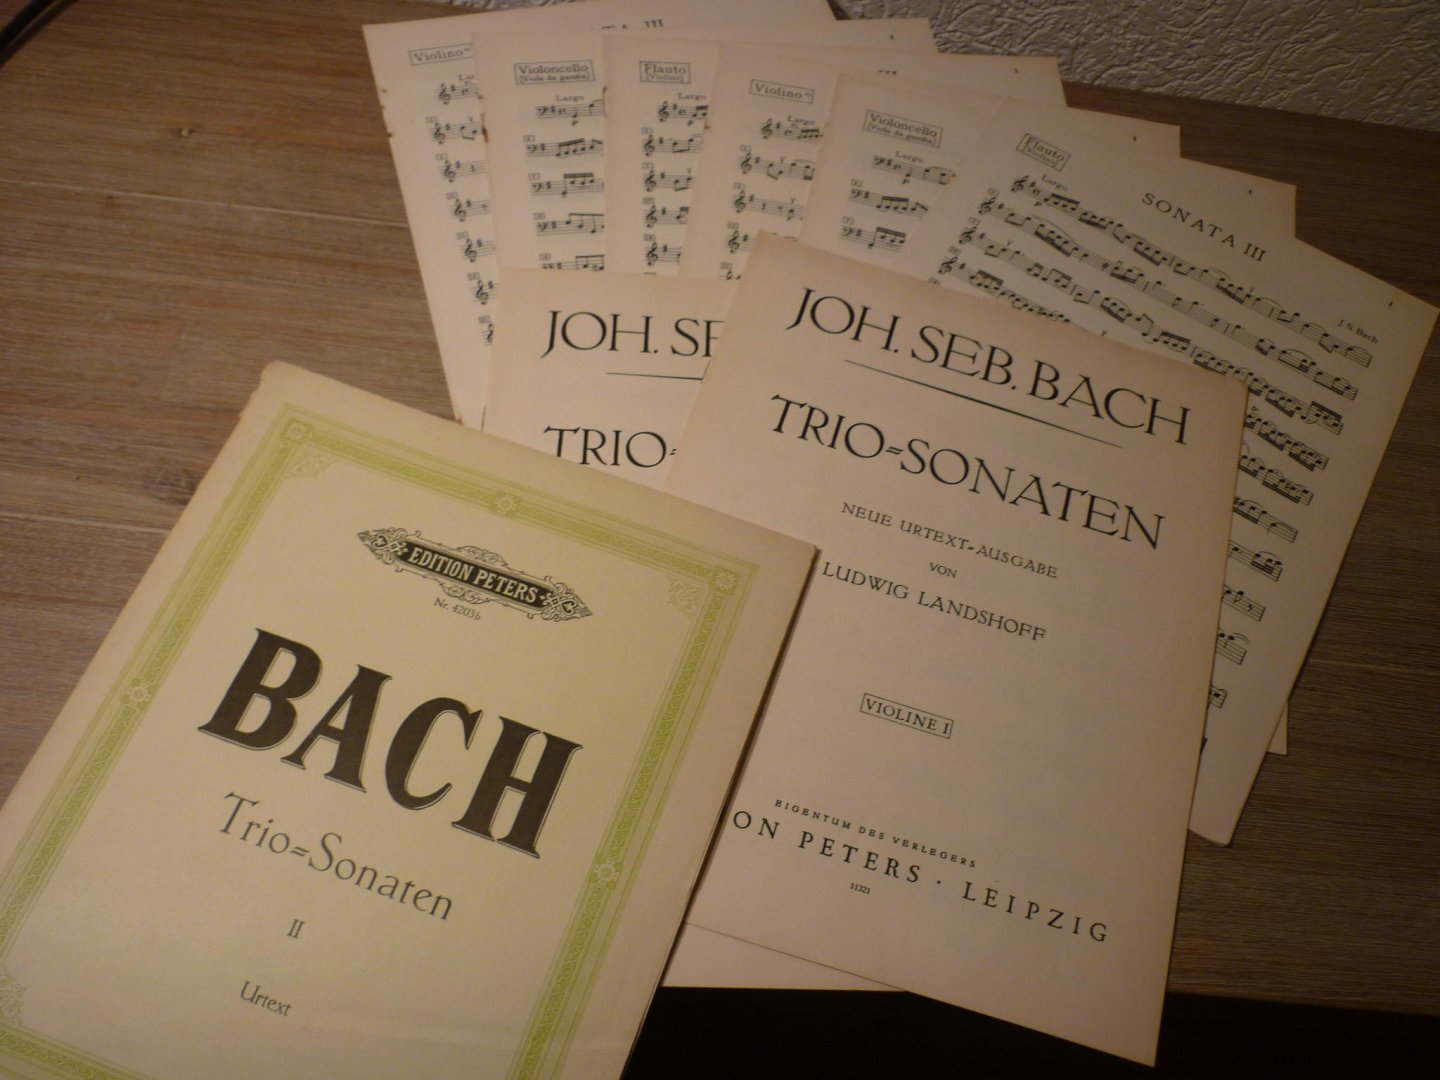 Bach; J. S. (1685-1750) - Trio Sonaten II Score and parts